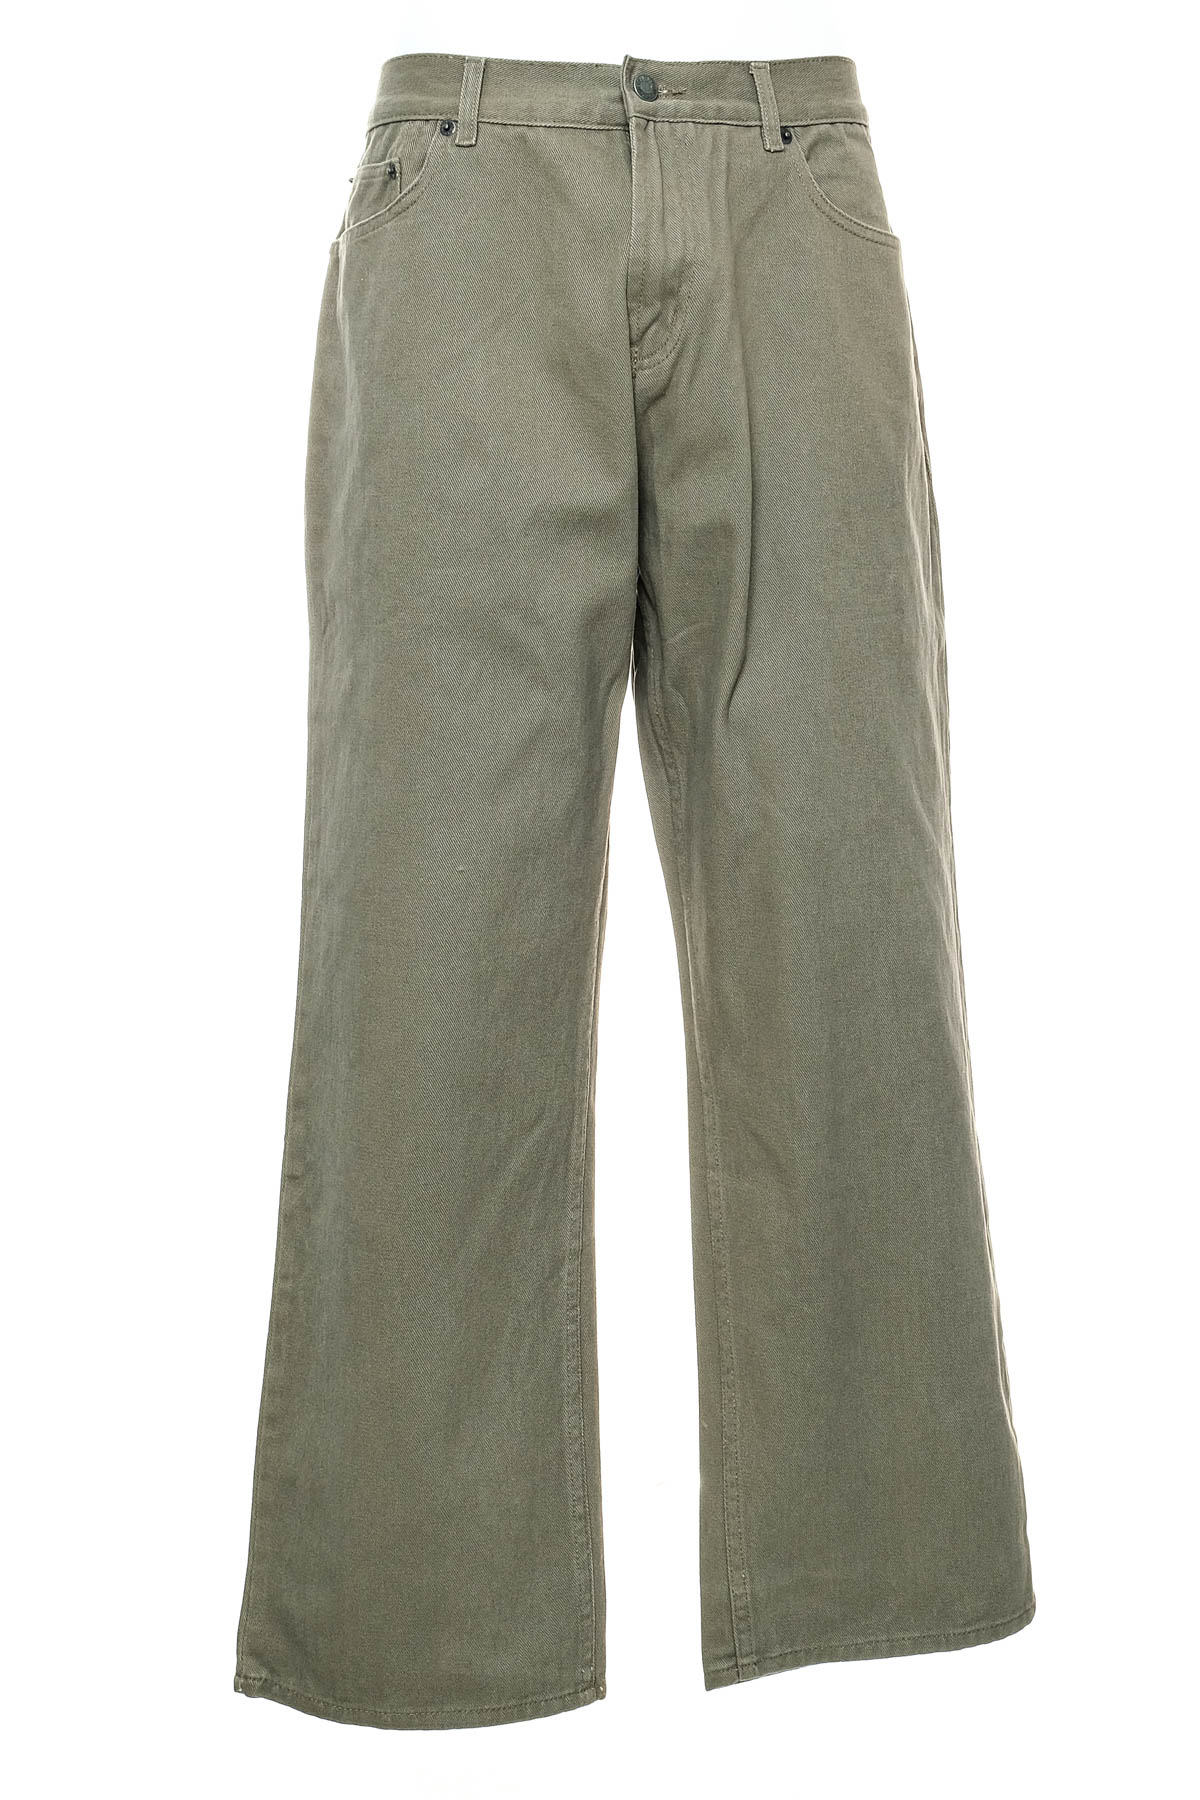 Ανδρικό παντελόνι - Denim Co - 0